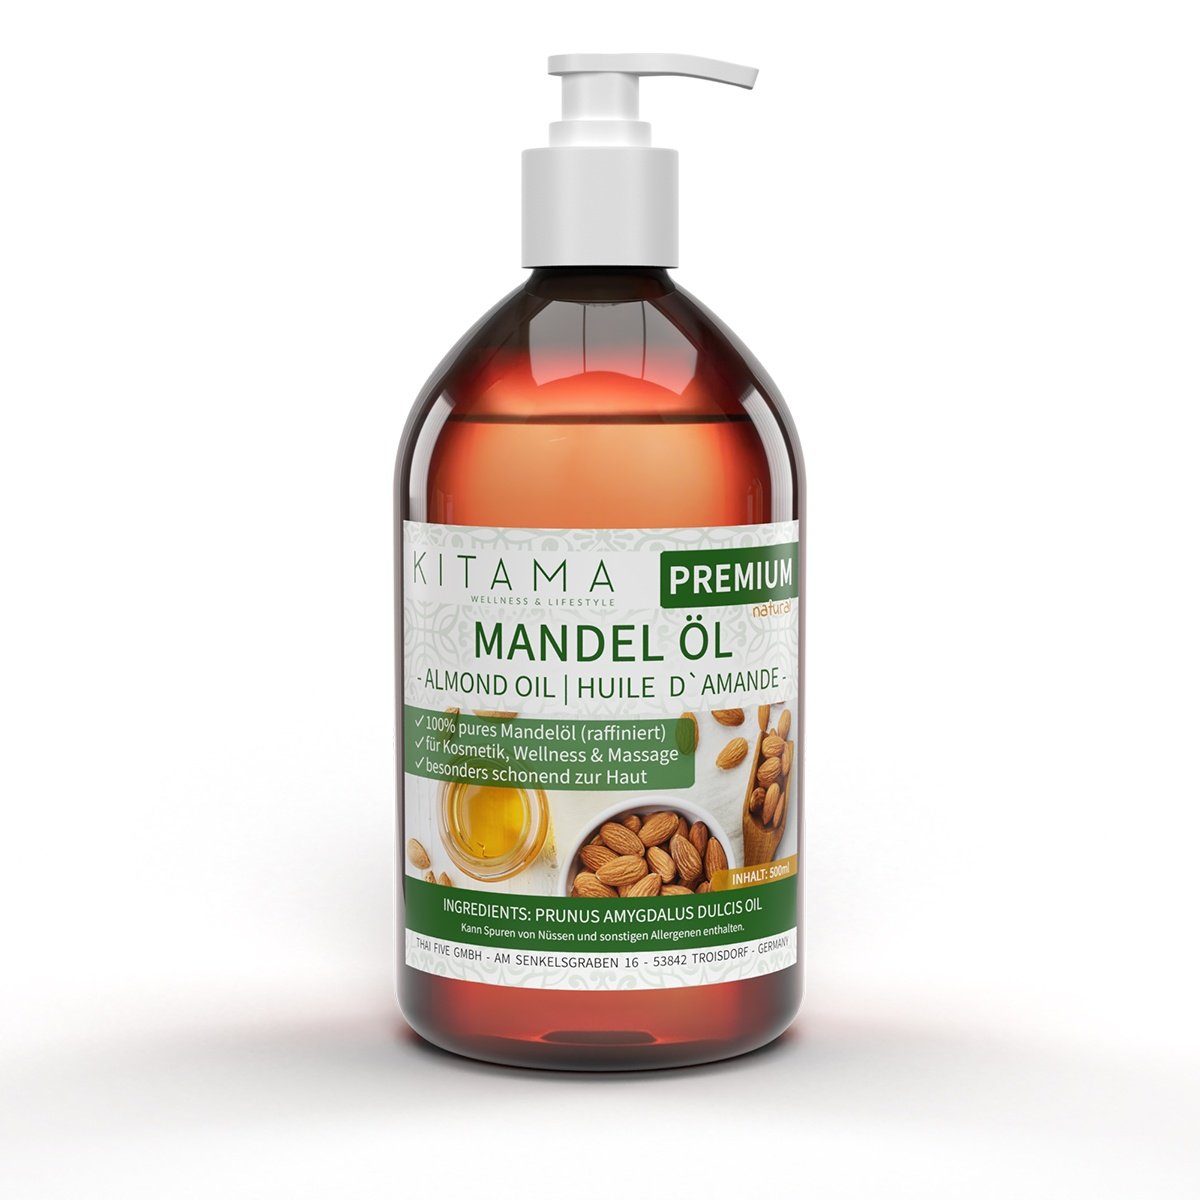 & Kitama sanftes Pflege-Öl 500ml, Massageöl - Körperöl Haar Naturkosmetik Mandelöl Haut Basisöl für Baby-Öl,